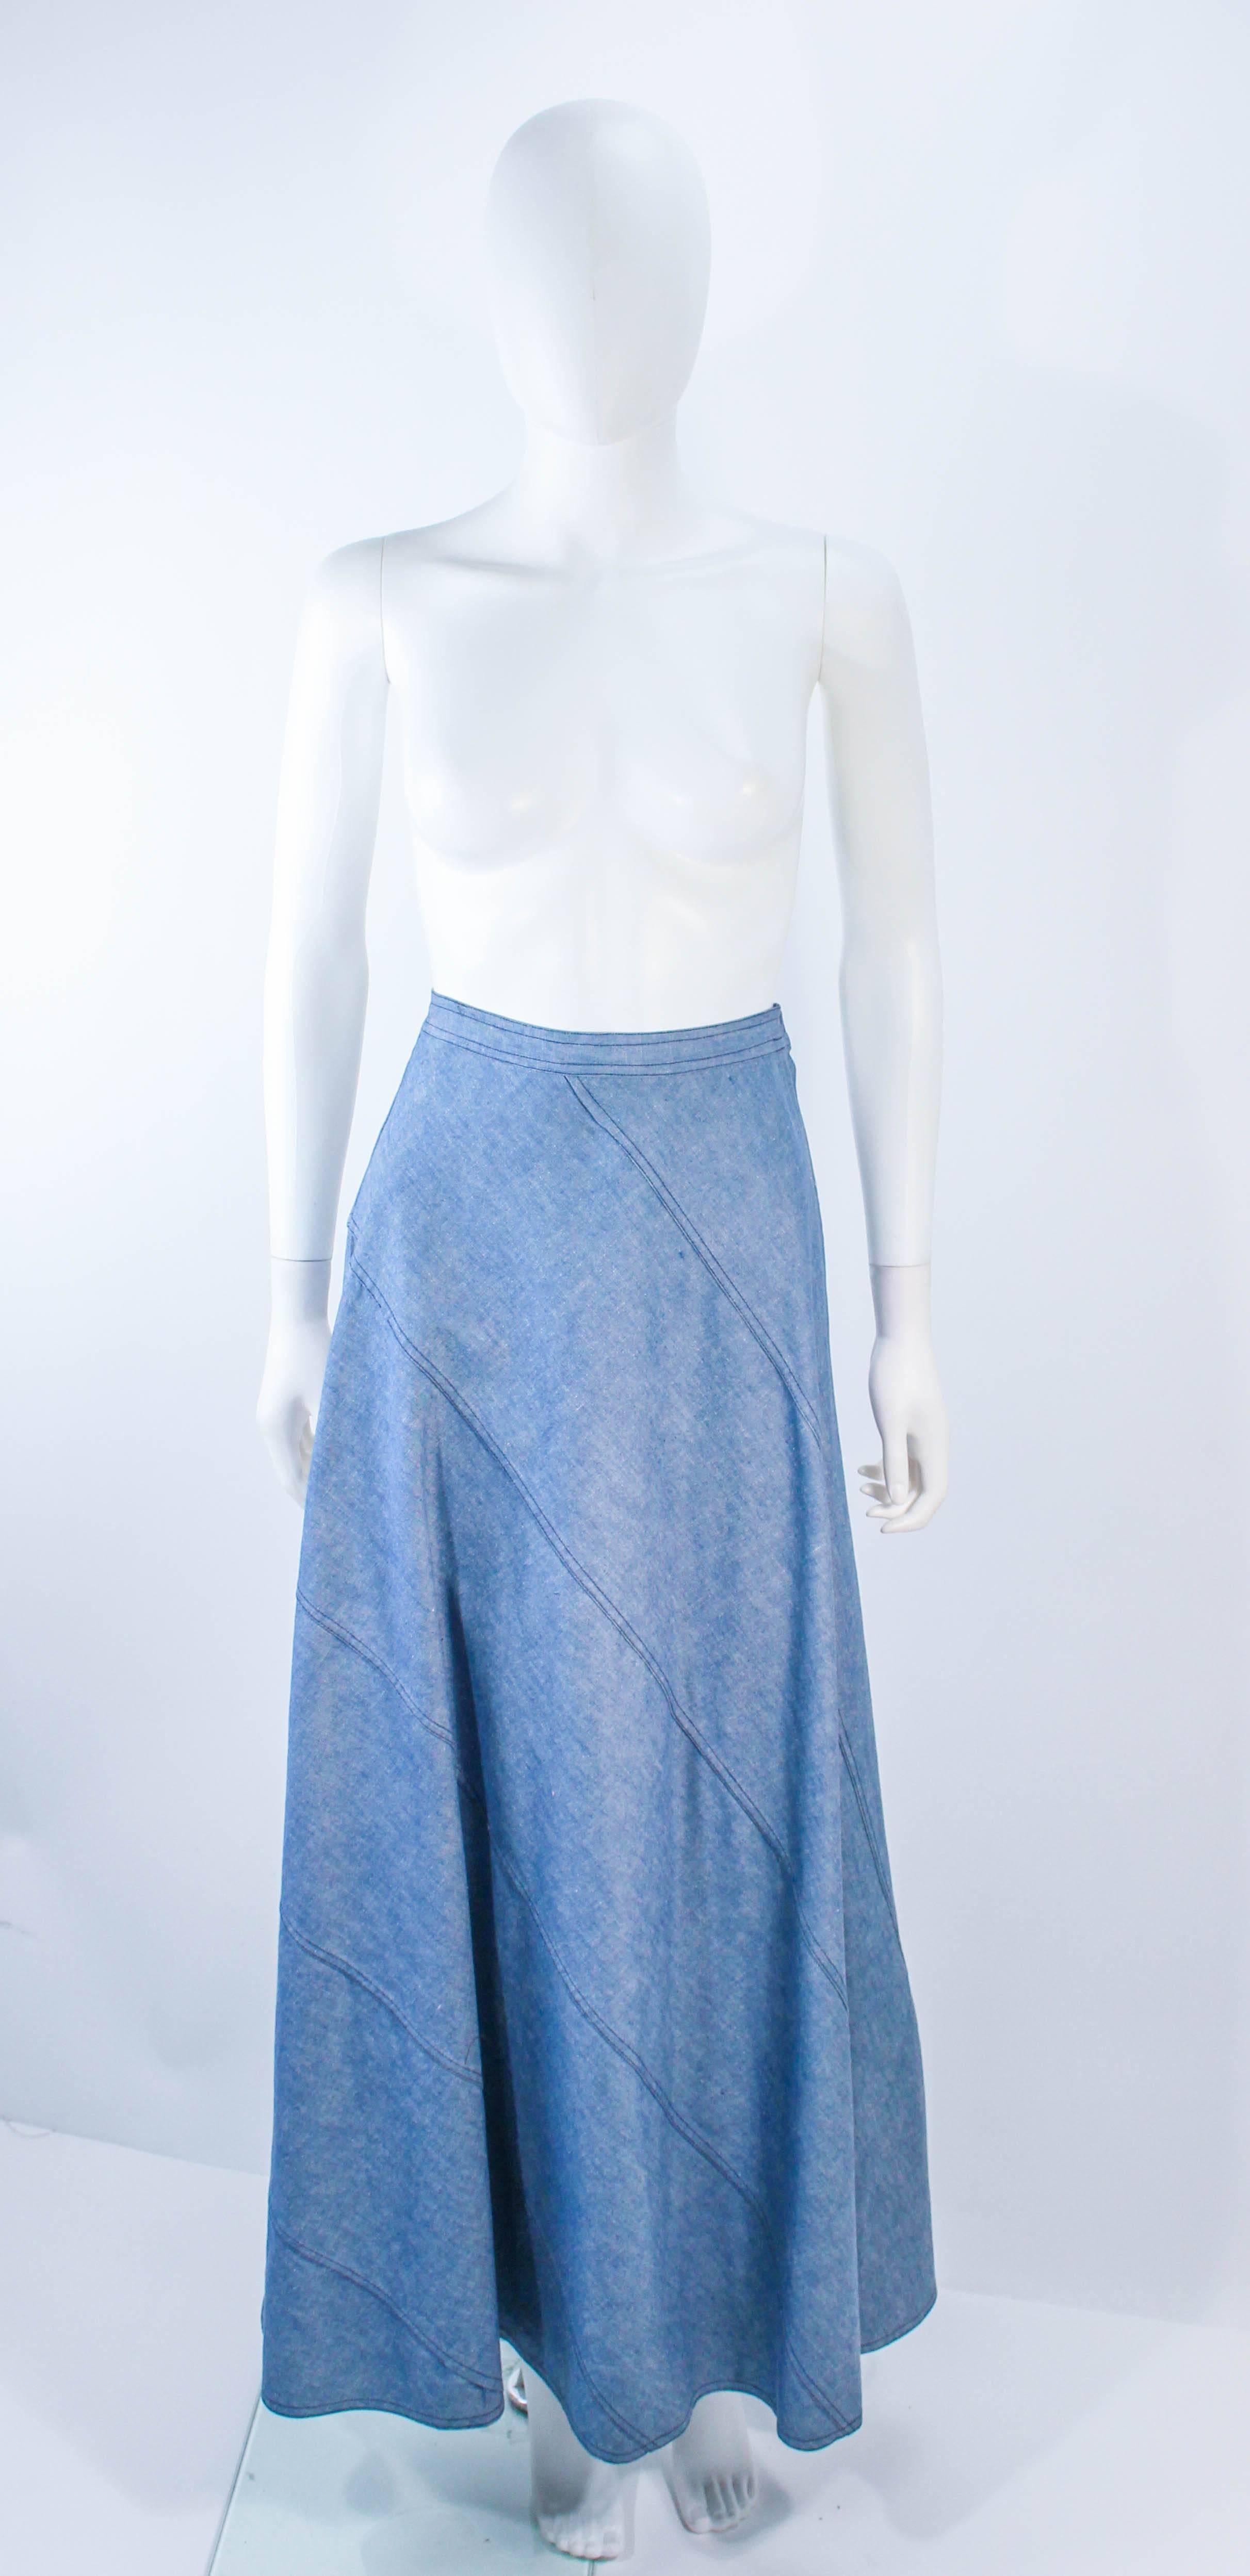 Cette jupe Oscar De La Renta est composée d'un denim léger bleu clair et présente un design asymétrique en biais avec des surpiqûres. Une fermeture à glissière est prévue sur le côté. Vintage, en excellent état.

**Veuillez comparer les mesures pour